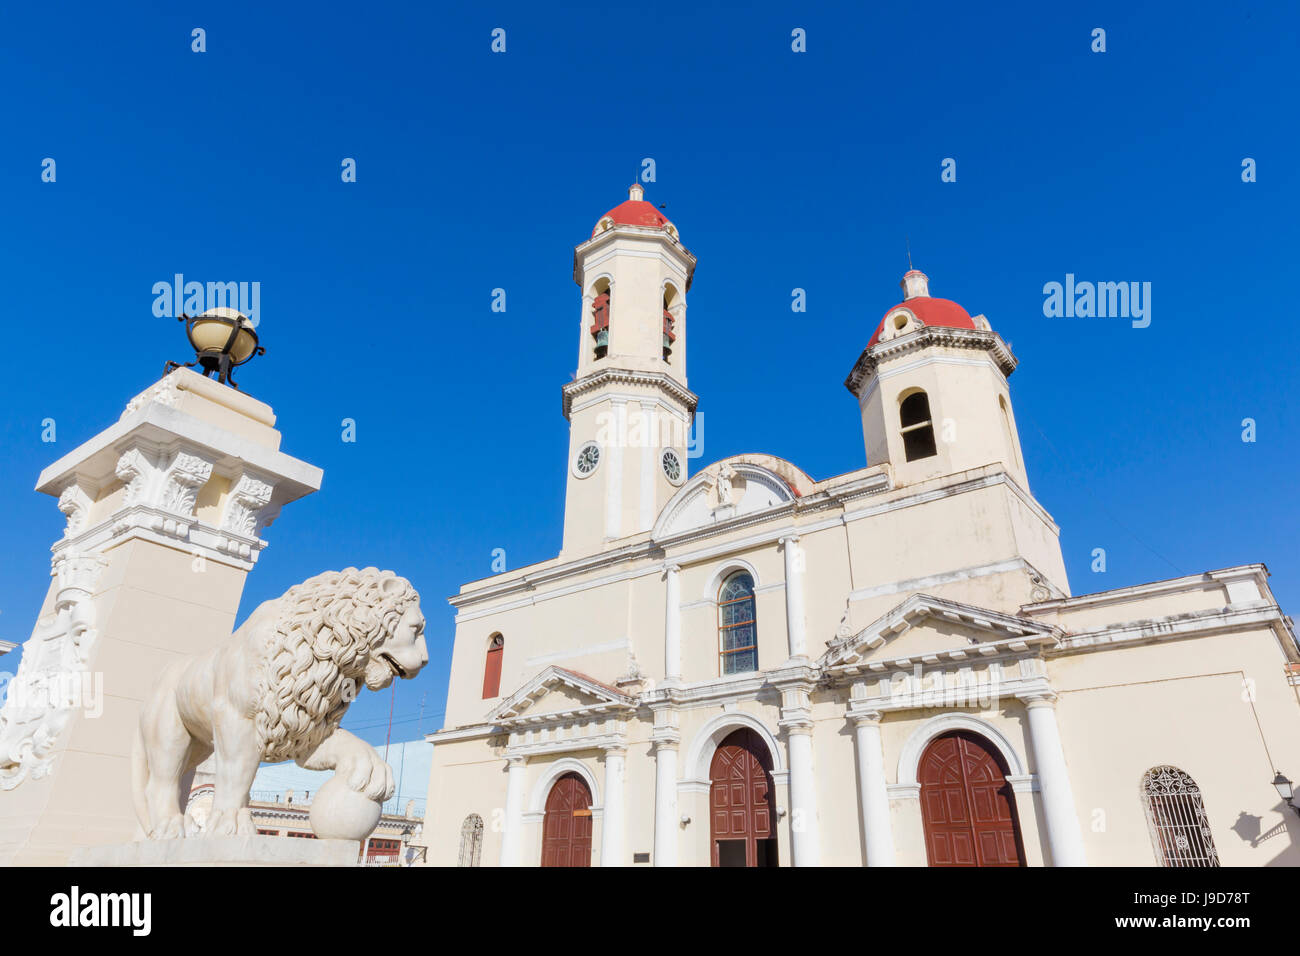 Die Catedral De La Purísima Concepción in Plaza Jose Marti, Cienfuegos, UNESCO World Heritage Site, Kuba, Karibik, Karibik Stockfoto